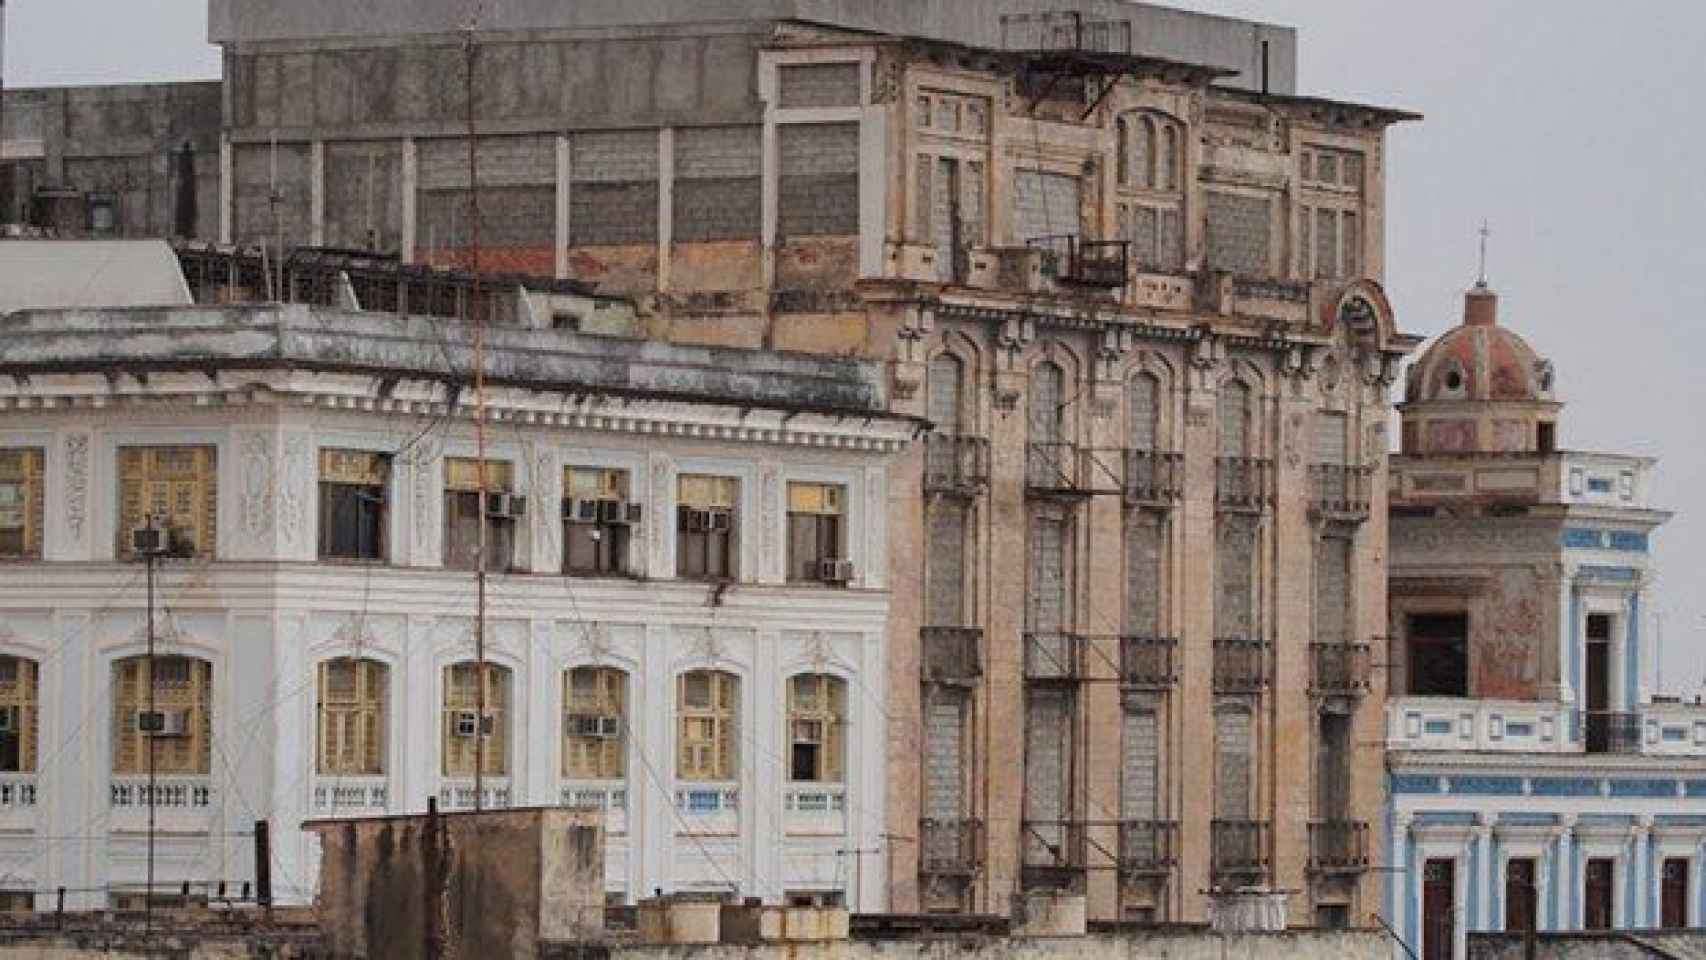 Imagen antigua del Hotel San Carlos, en un estado defectuoso.